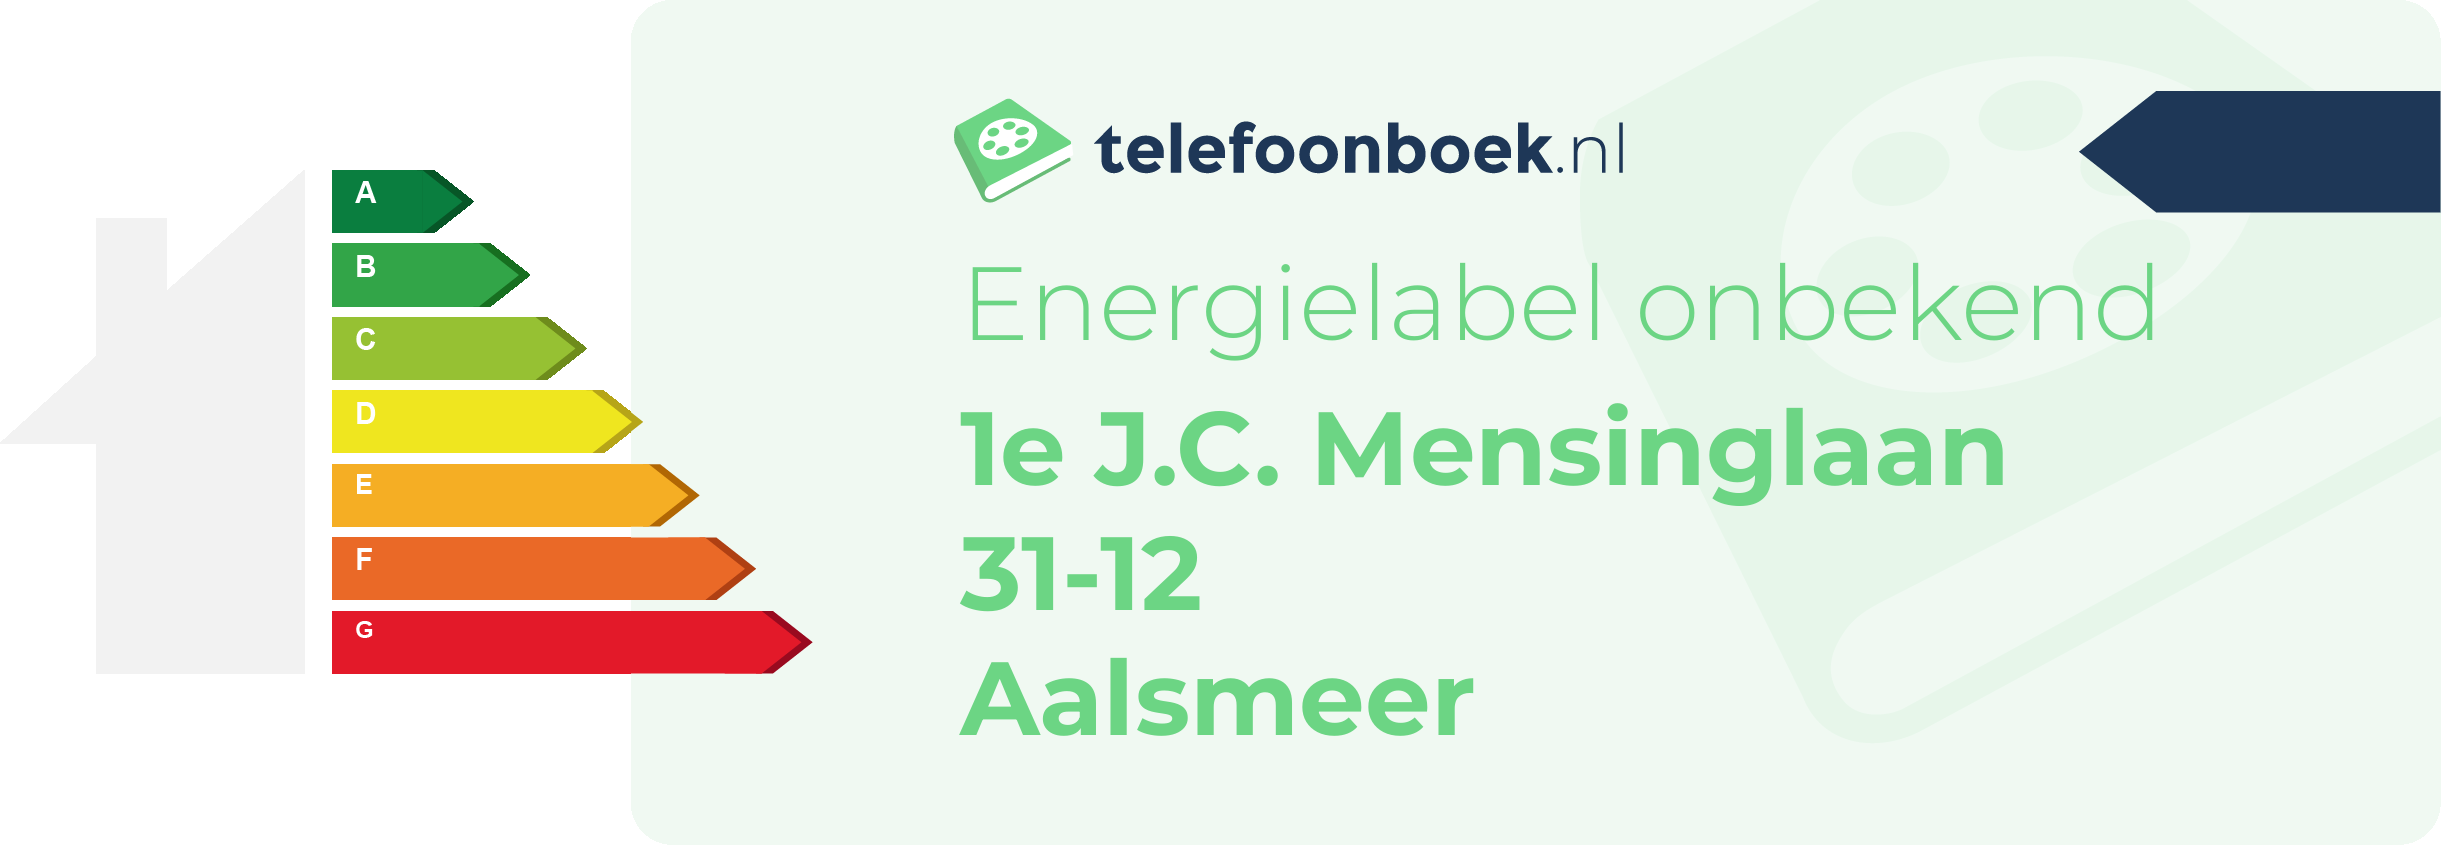 Energielabel 1e J.C. Mensinglaan 31-12 Aalsmeer